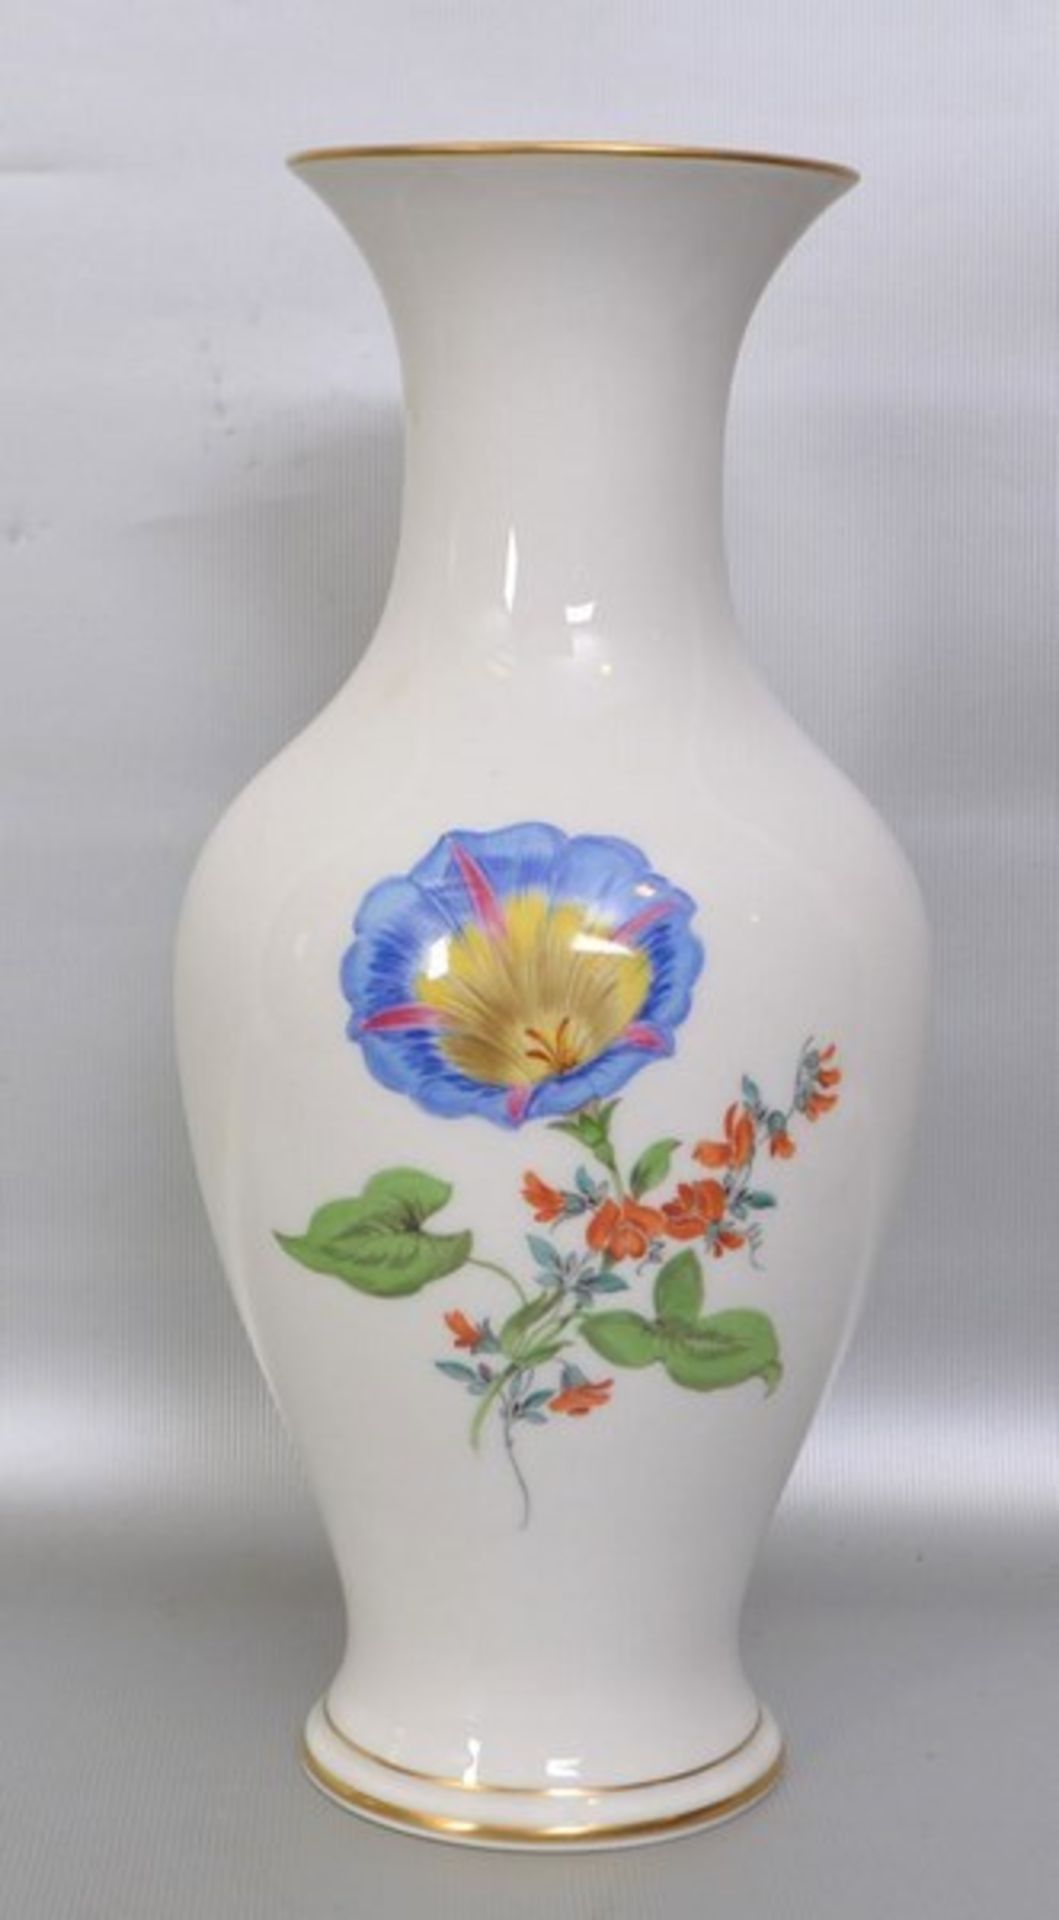 Vase runder Fuß, Goldrand, leicht gebaucht, Wandung mit bunter Feldblumenbemalung, am unteren Rand